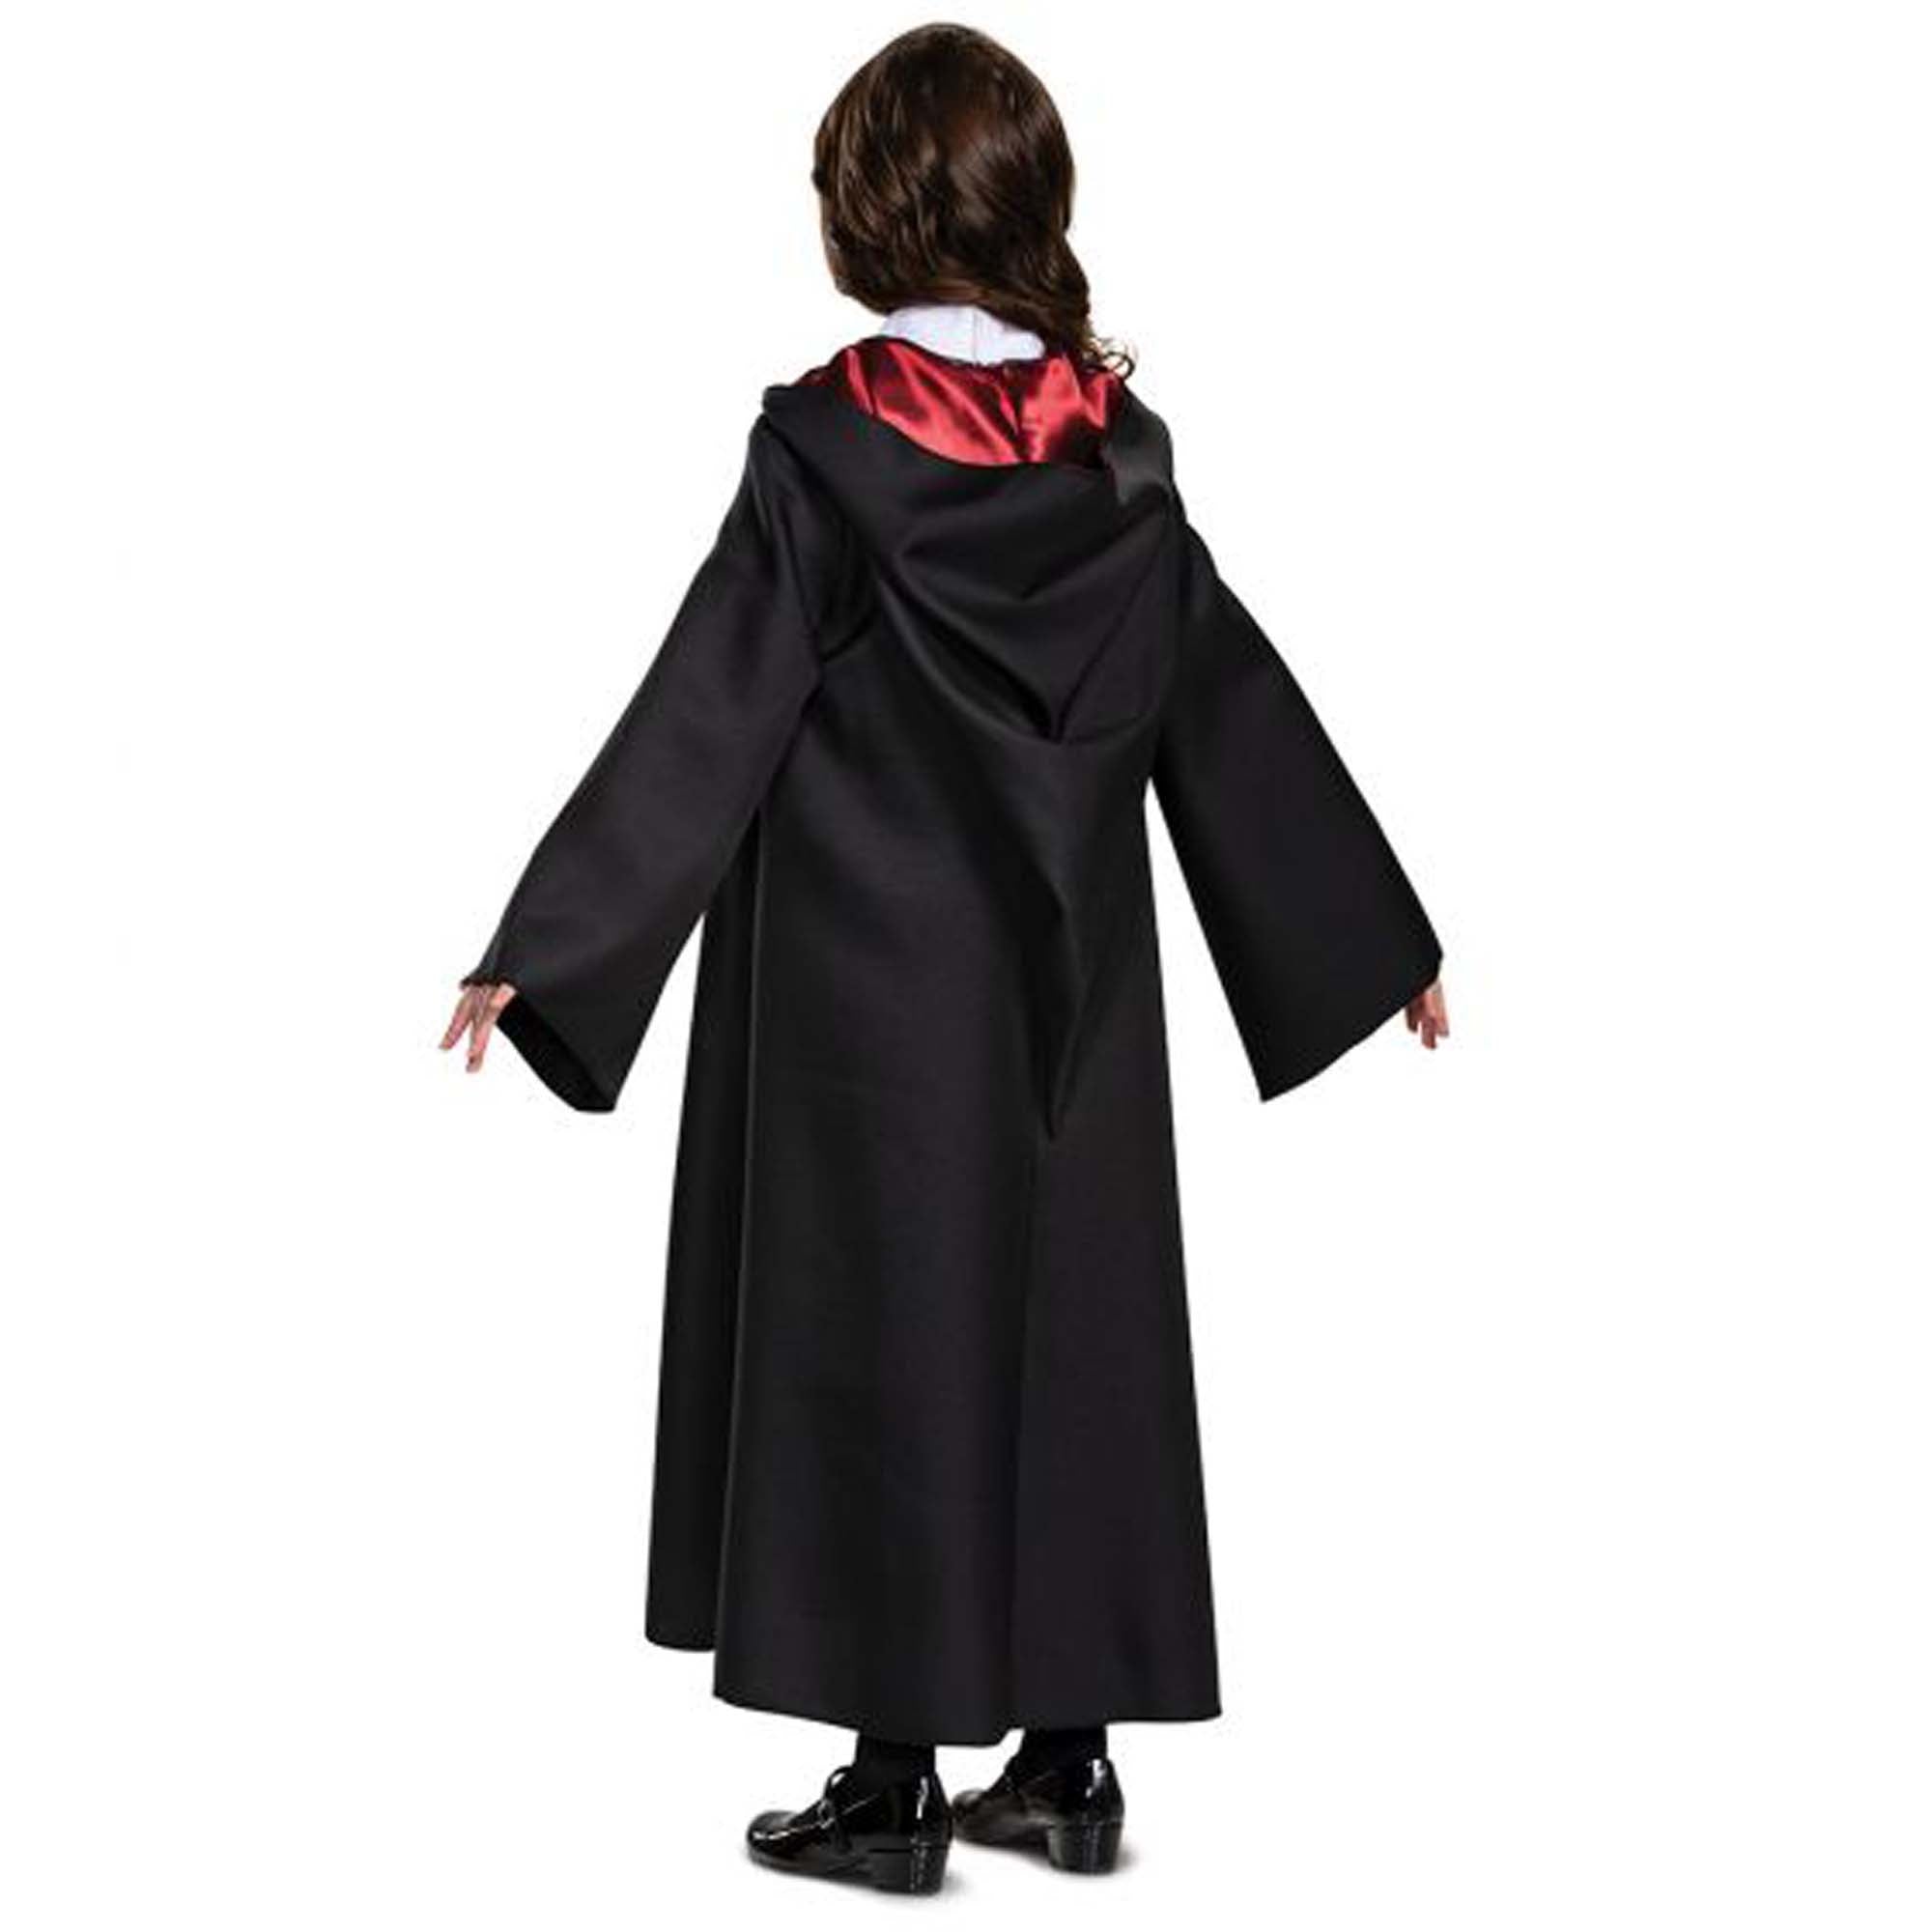 Déguisement Costume Enfant Ensemble Hermione Dlx robe bag noeud 6-8ans -  9912433